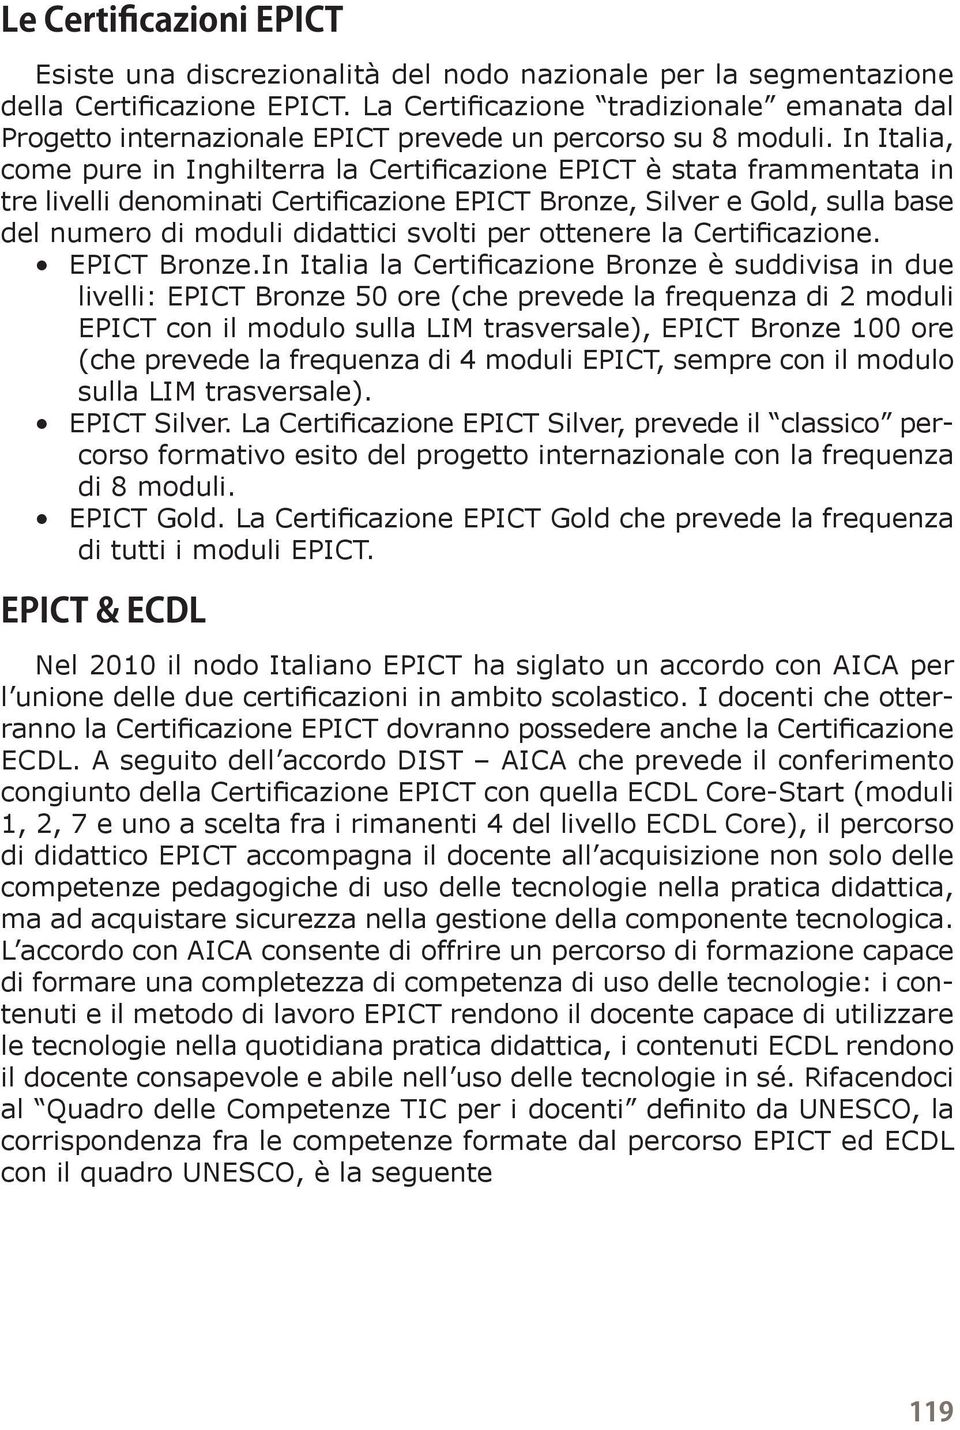 In Italia, come pure in Inghilterra la Certificazione EPICT è stata frammentata in tre livelli denominati Certificazione EPICT Bronze, Silver e Gold, sulla base del numero di moduli didattici svolti